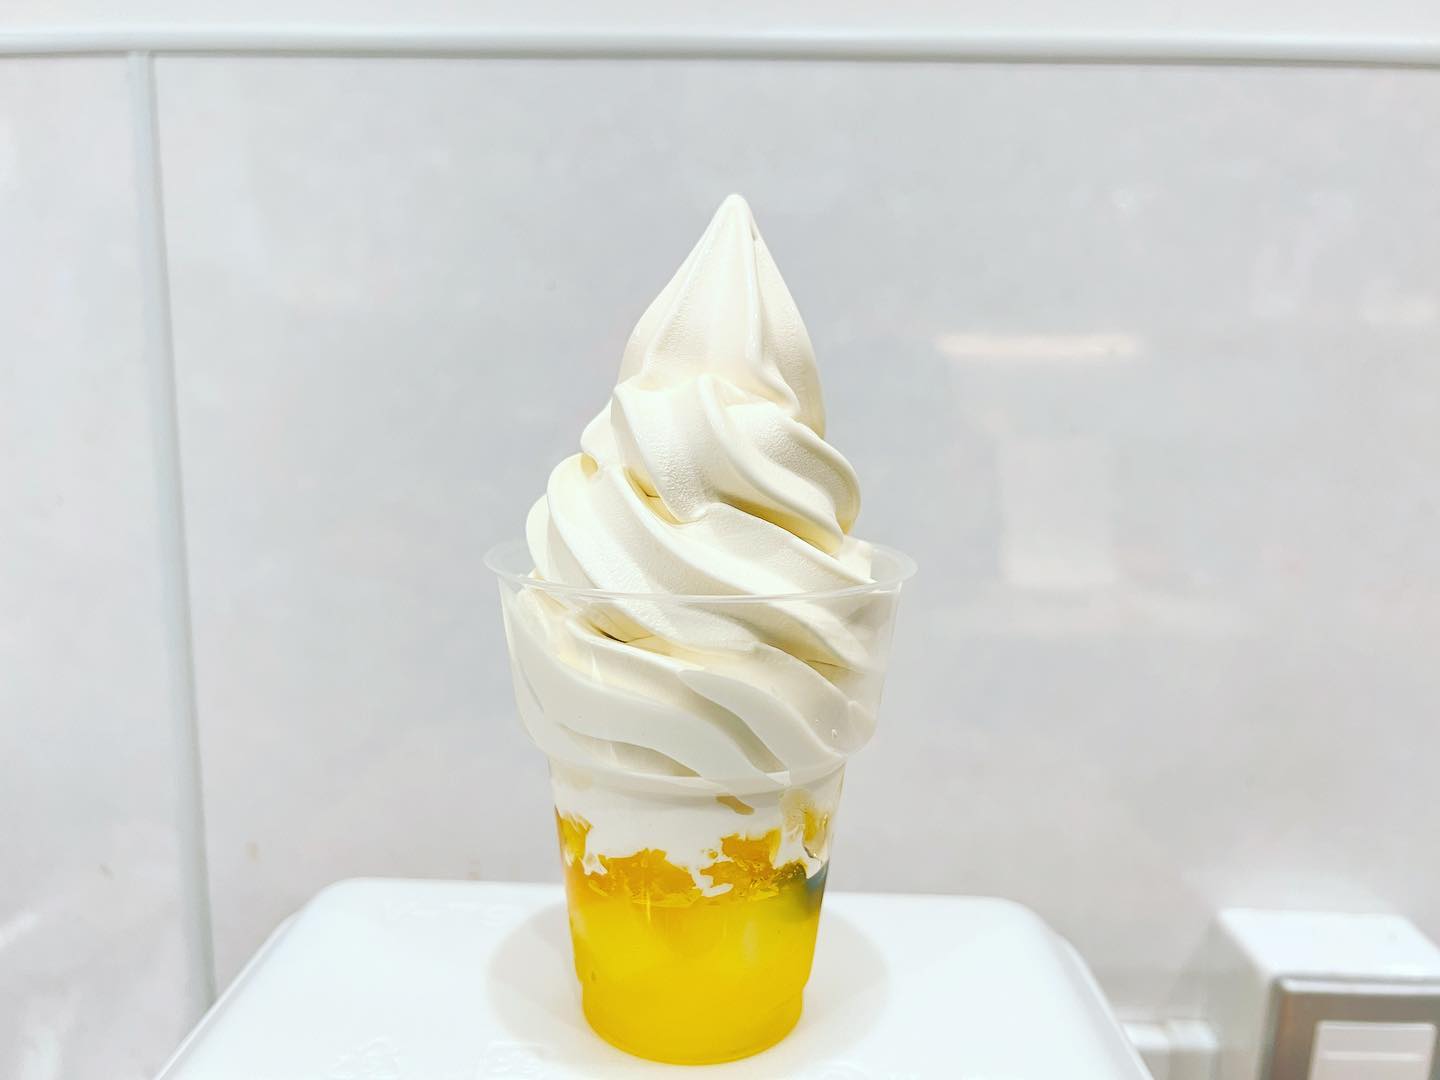 『フルーツレモンゼリー
北海道ソフトクリーム』
レモンゼリーの中にはハウスみかんやブルーベリーなどのフルーツのほかナタデココも隠れています。これが食べすすんでいくと凄くいいアクセントになってきます。苺、ブドウ、レモンのトッピングの上にとろ〜リ蜂蜜がかけられています。このレモンゼリーに北海道ソフトクリームを盛れば完成です。